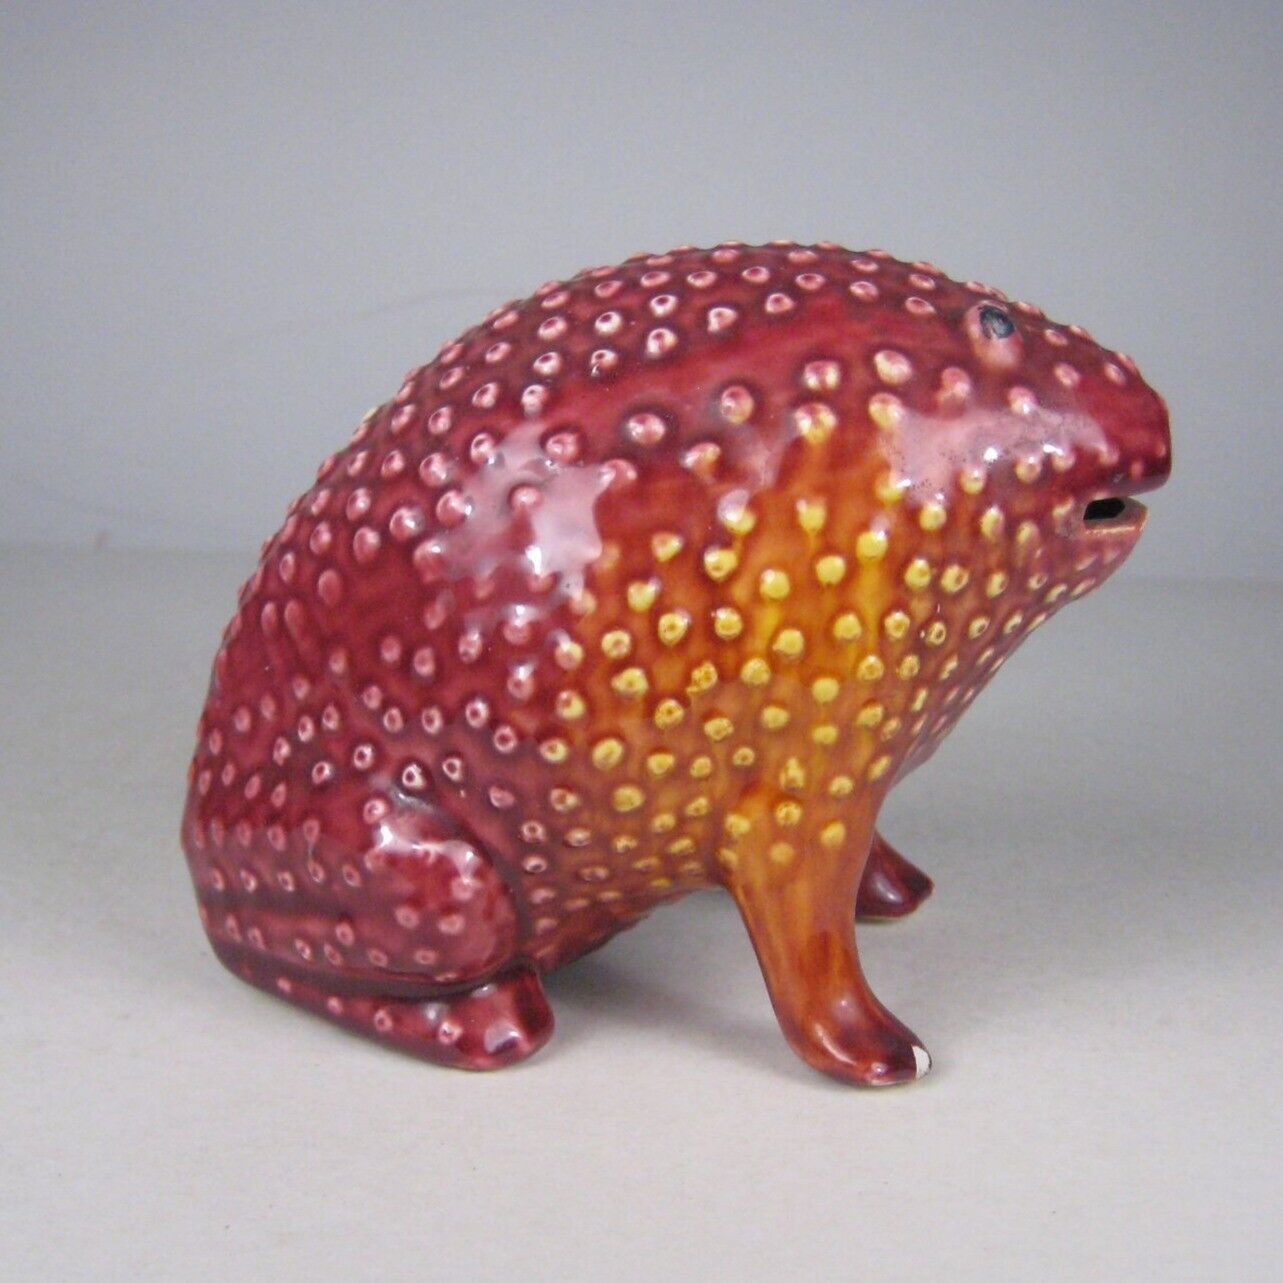 Tiffany Glazed Ceramic Toad Frog Sculpture Vintage Figurine Portugal Bank CHIP